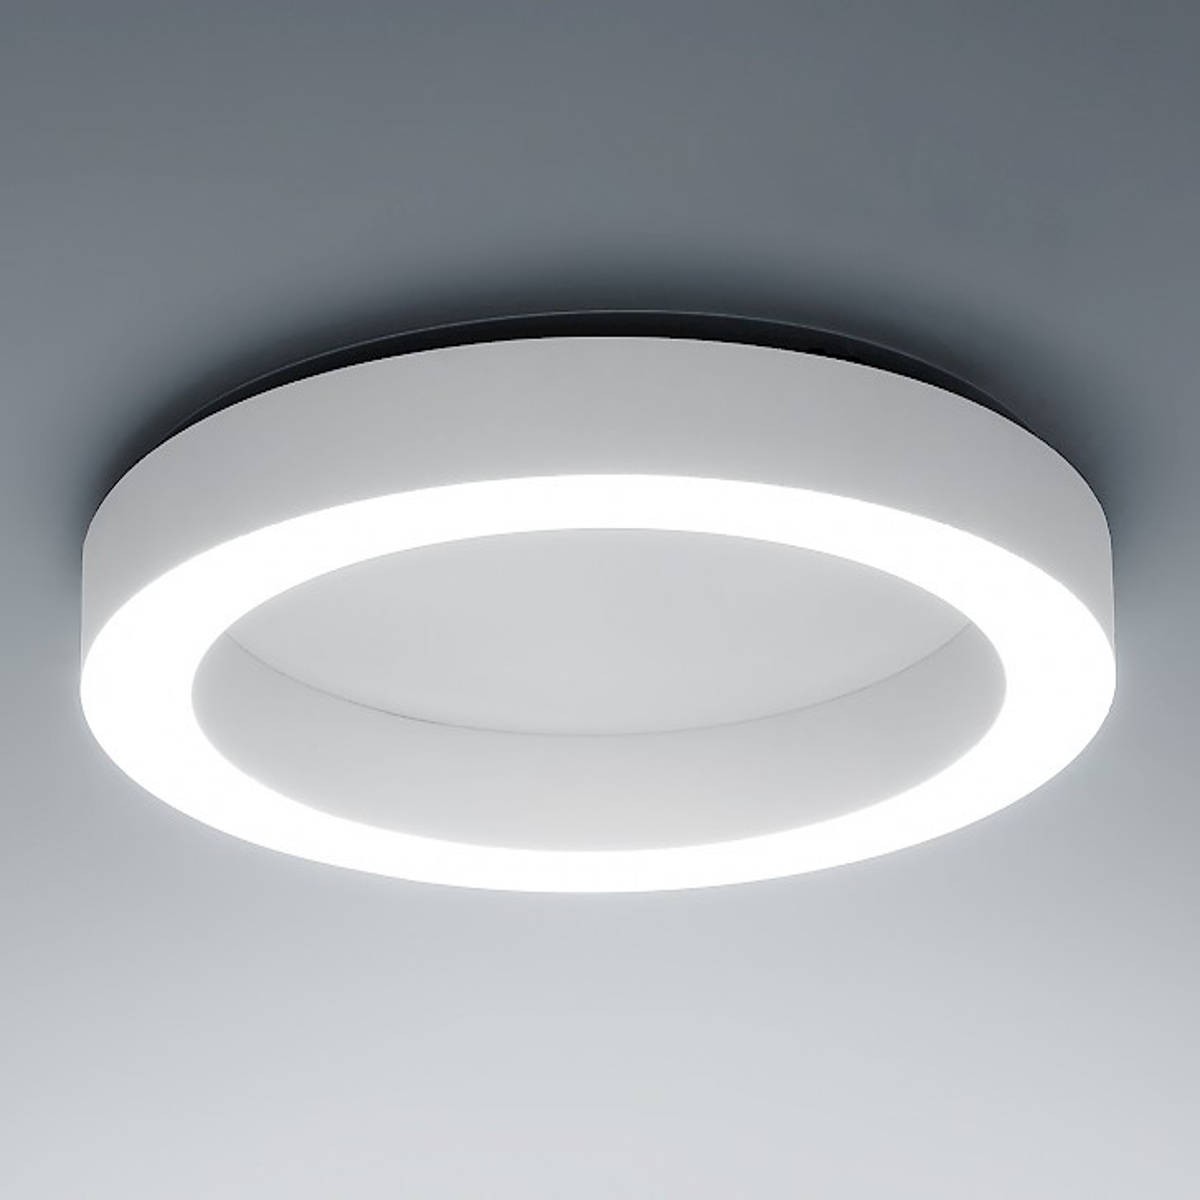 Plafoniera minimale con struttura in alluminio,dalla forma circolare a  forma di anello con colore bianco con luce a led ( 50W ) integrata Dimmerata